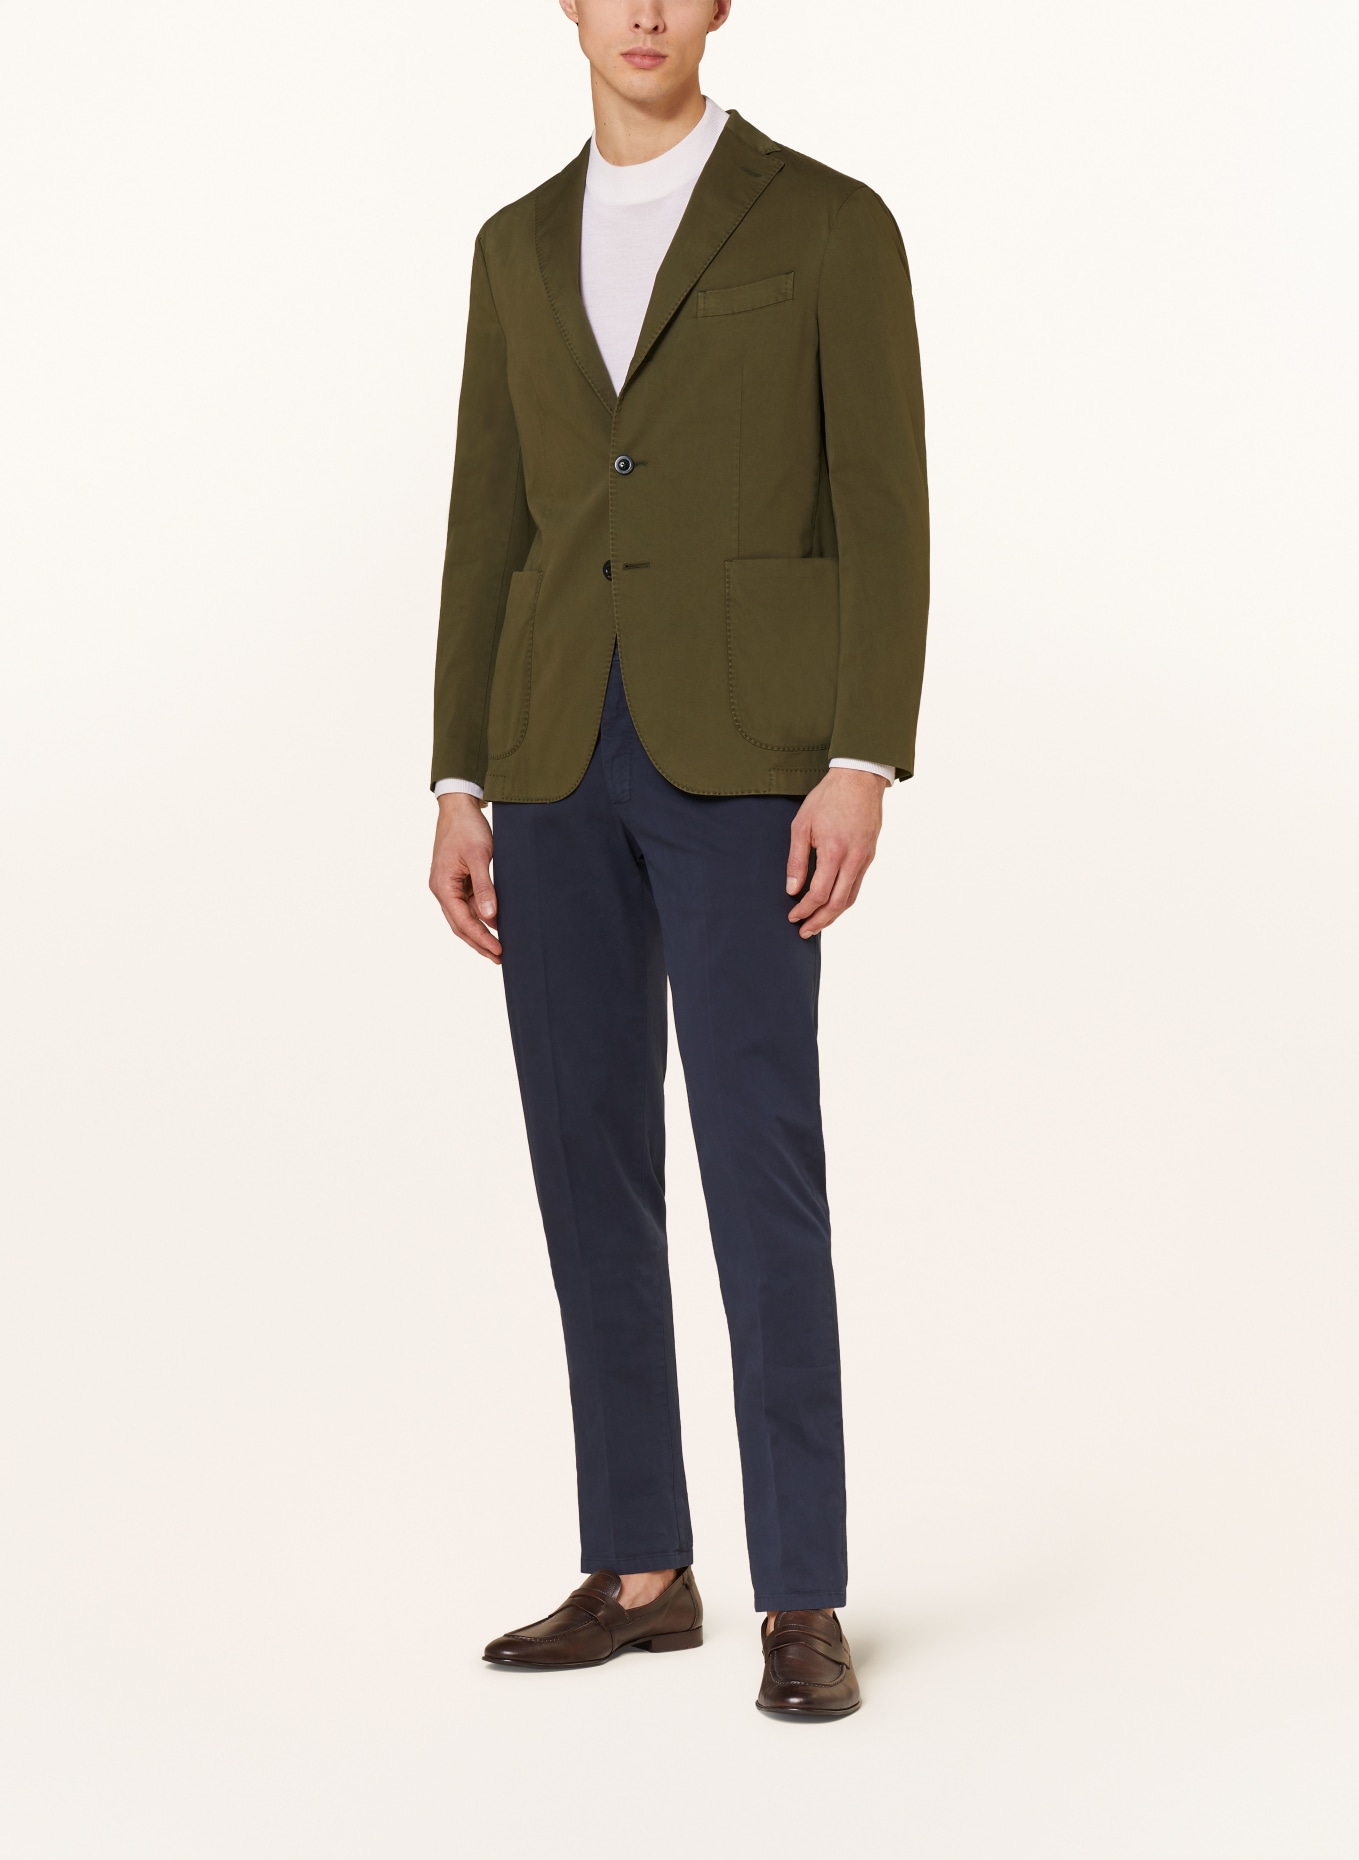 BOGLIOLI Tailored jacket extra slim fit, Color: OLIVE (Image 2)